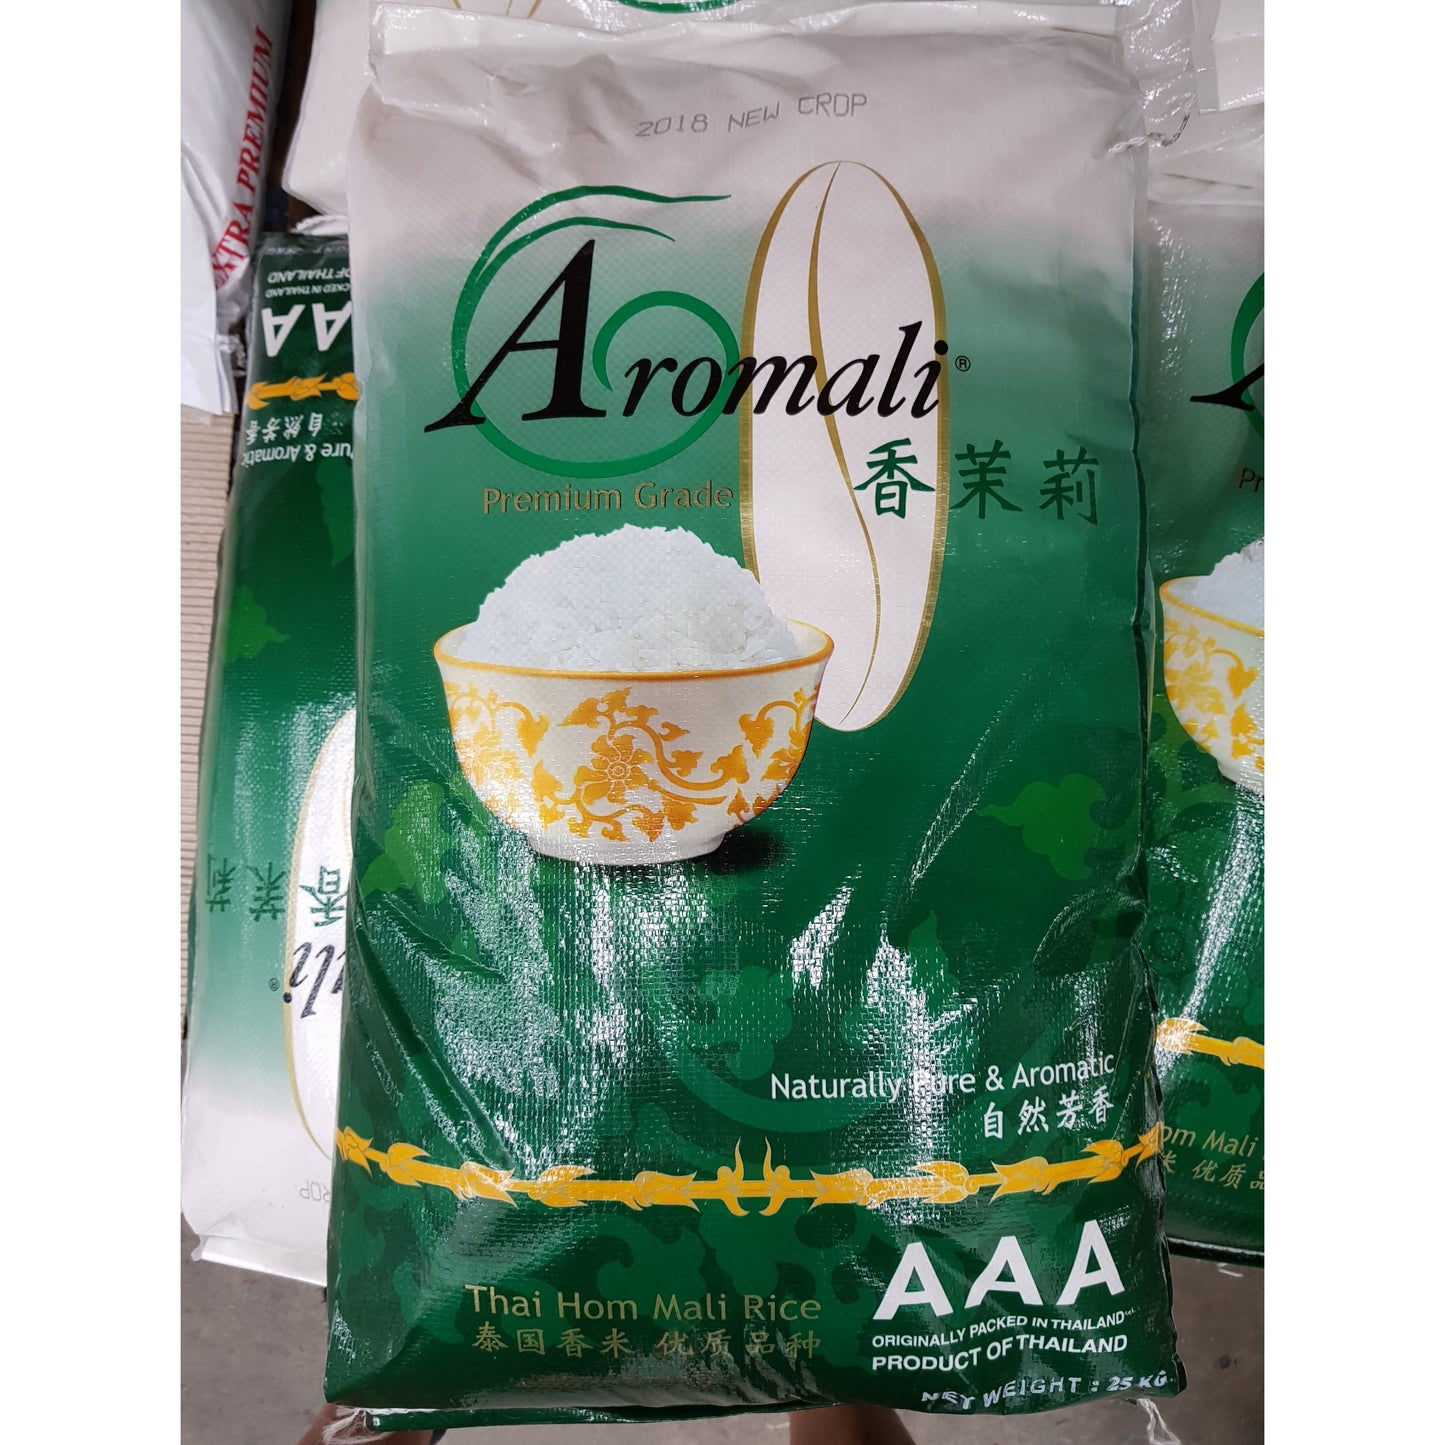 R003 Aromali Brand- Premium grade AAA Thai Jasmine Rice 25kg - 1 bag - New Eastland Pty Ltd - Asian food wholesalers